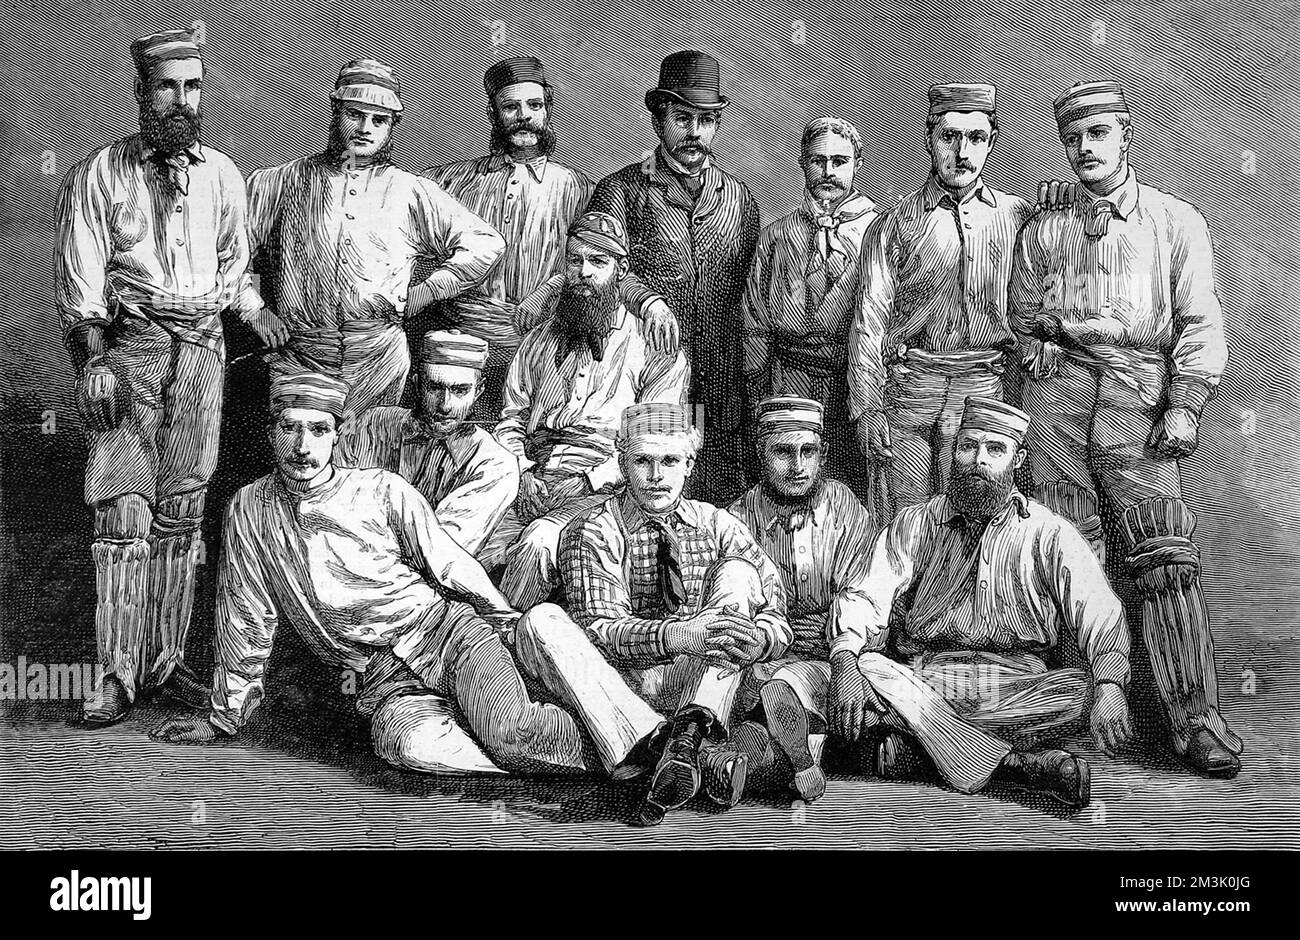 Das australische Cricket-Team, das 1878 England bereiste, war nur das zweite australische Team, das die Reise machte. Hintere Reihe, von links nach rechts: J. Blackham, T. Horan, G.H. Bailey, J.Conway (Manager), A. Bannerman, C. Bannerman, W.L. Murdoch. Erste Reihe, von links nach rechts: F.R. Spofforth, F.E. Allen, D.W. Gregory, W. Midwinter, T.W. Garrett, H.F. Boyle, Ich Bin'S. 1878 Stockfoto